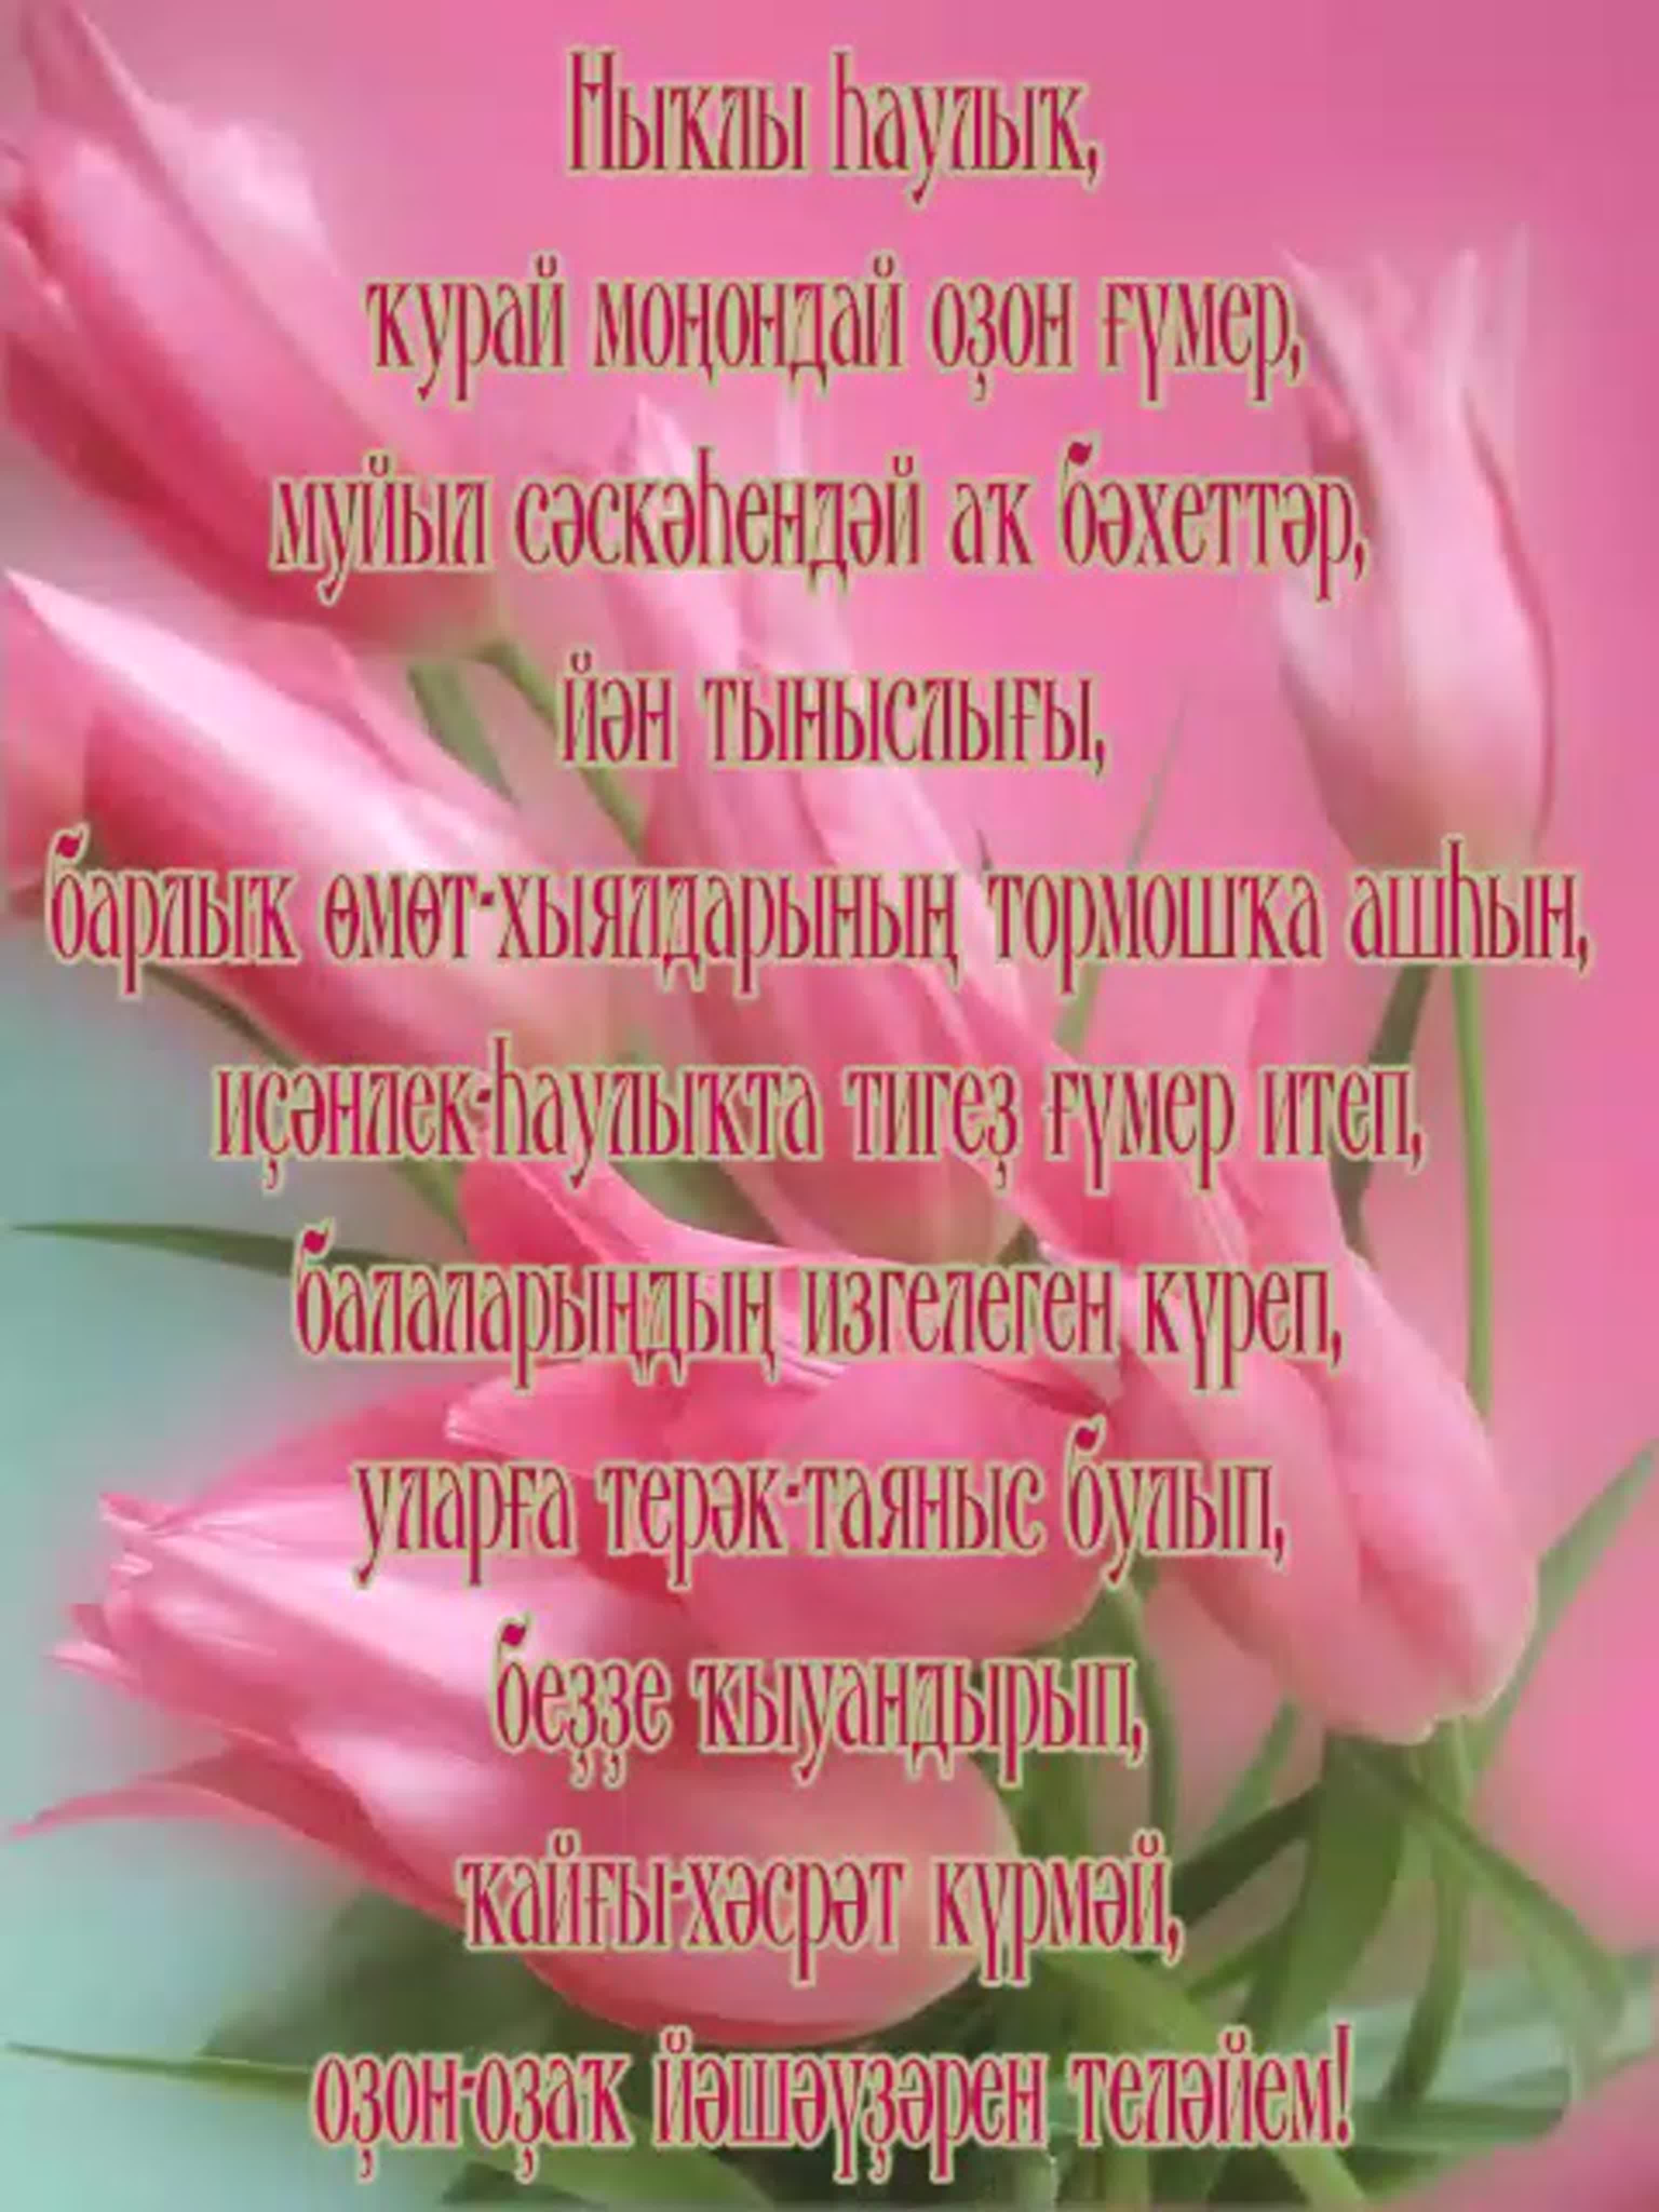 Поздравление на башкирском языке маме. С днем рождения башкирские поздравления с открытками. Поздравления с днём рождения на башкирском. Поздравляю с днём рождения на башкирском языке. Открытки с днём рождения на башкирском.